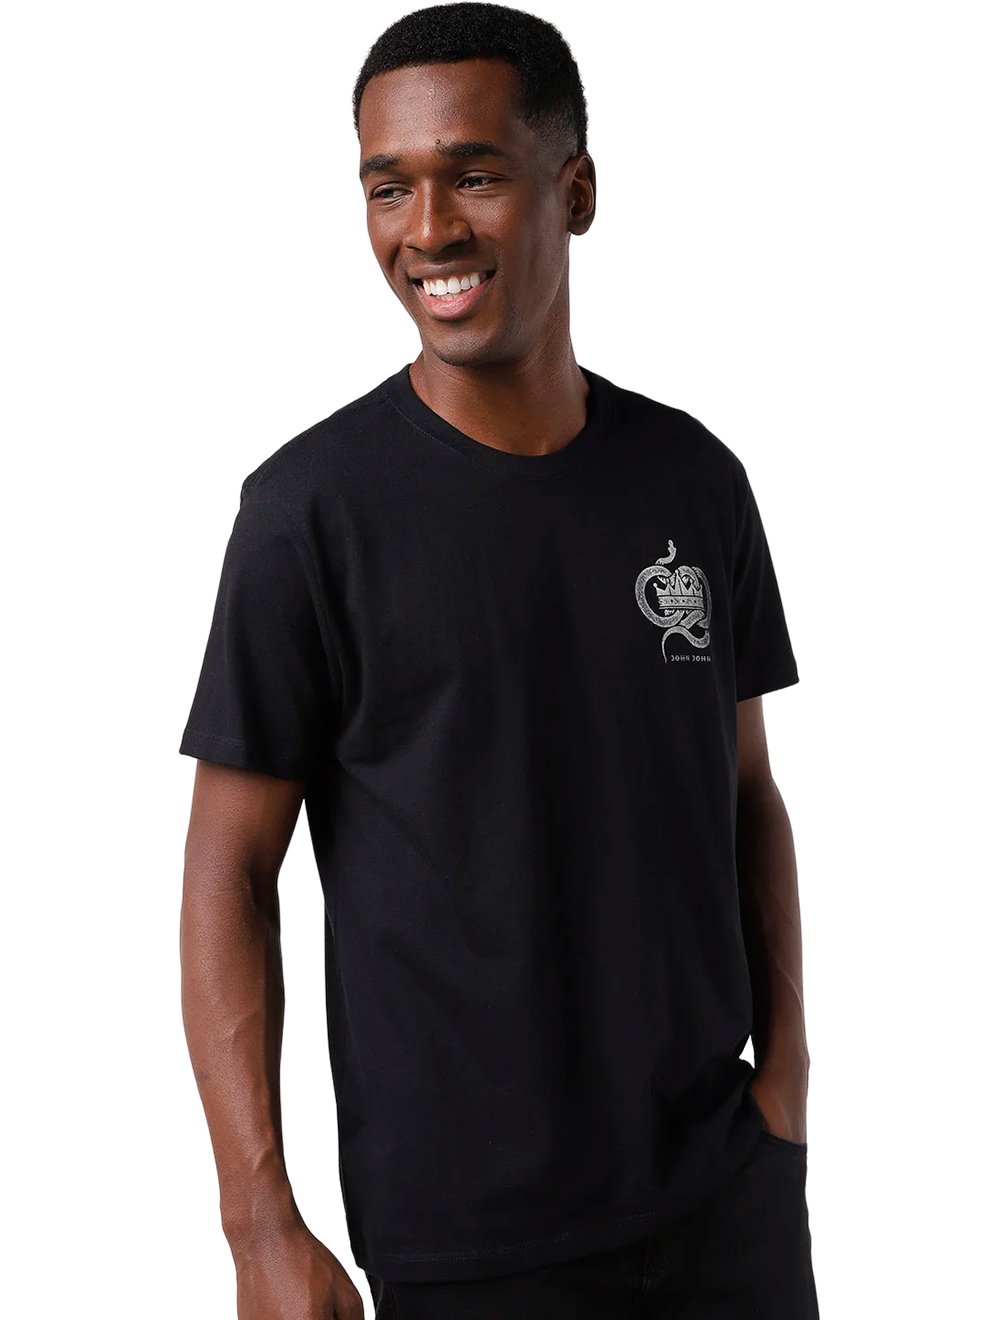 Camiseta John John Sing Black Masculina Preta - Dom Store Multimarcas  Vestuário Calçados Acessórios